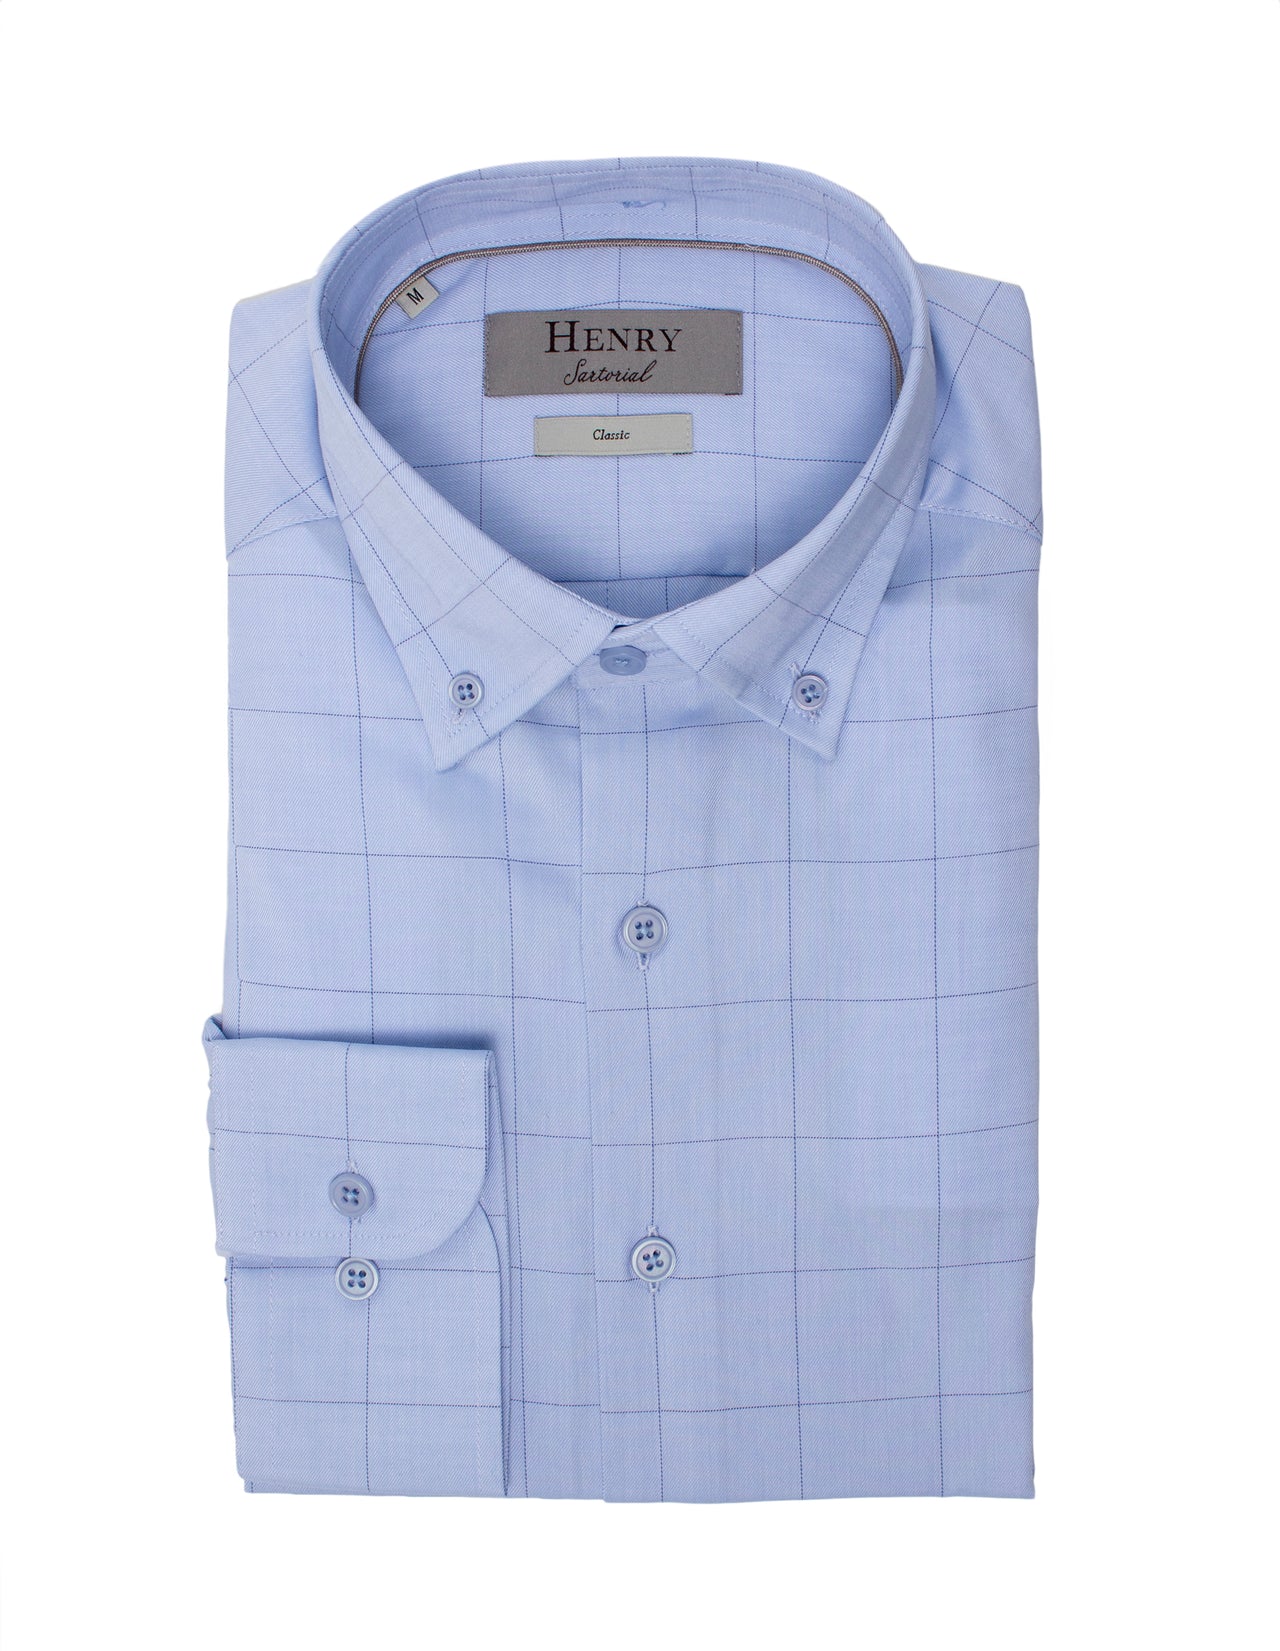 HENRY SARTORIAL Casual Plain Shirt BLUE